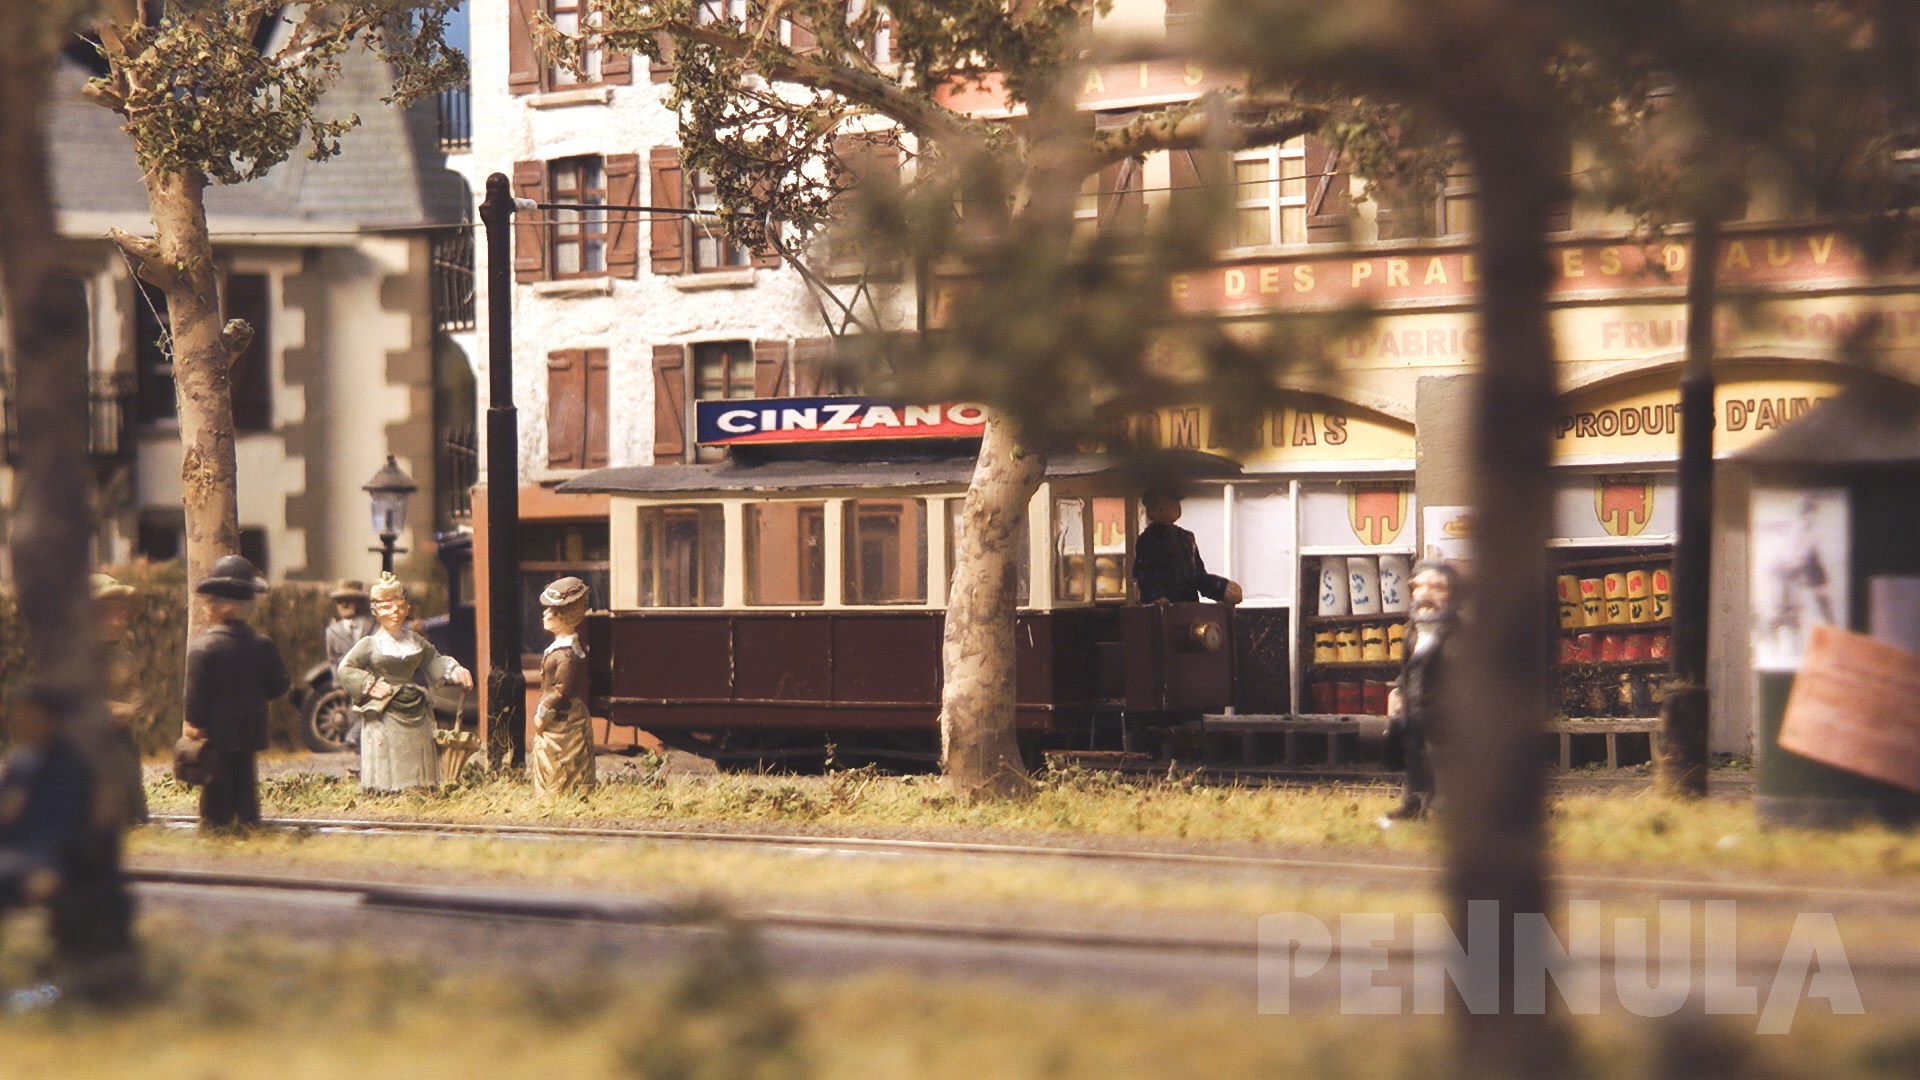 Modelleisenbahn - Ein Miniaturland mit Schmalspur Eisenbahn und Dampflok, wo jeder leben möchte